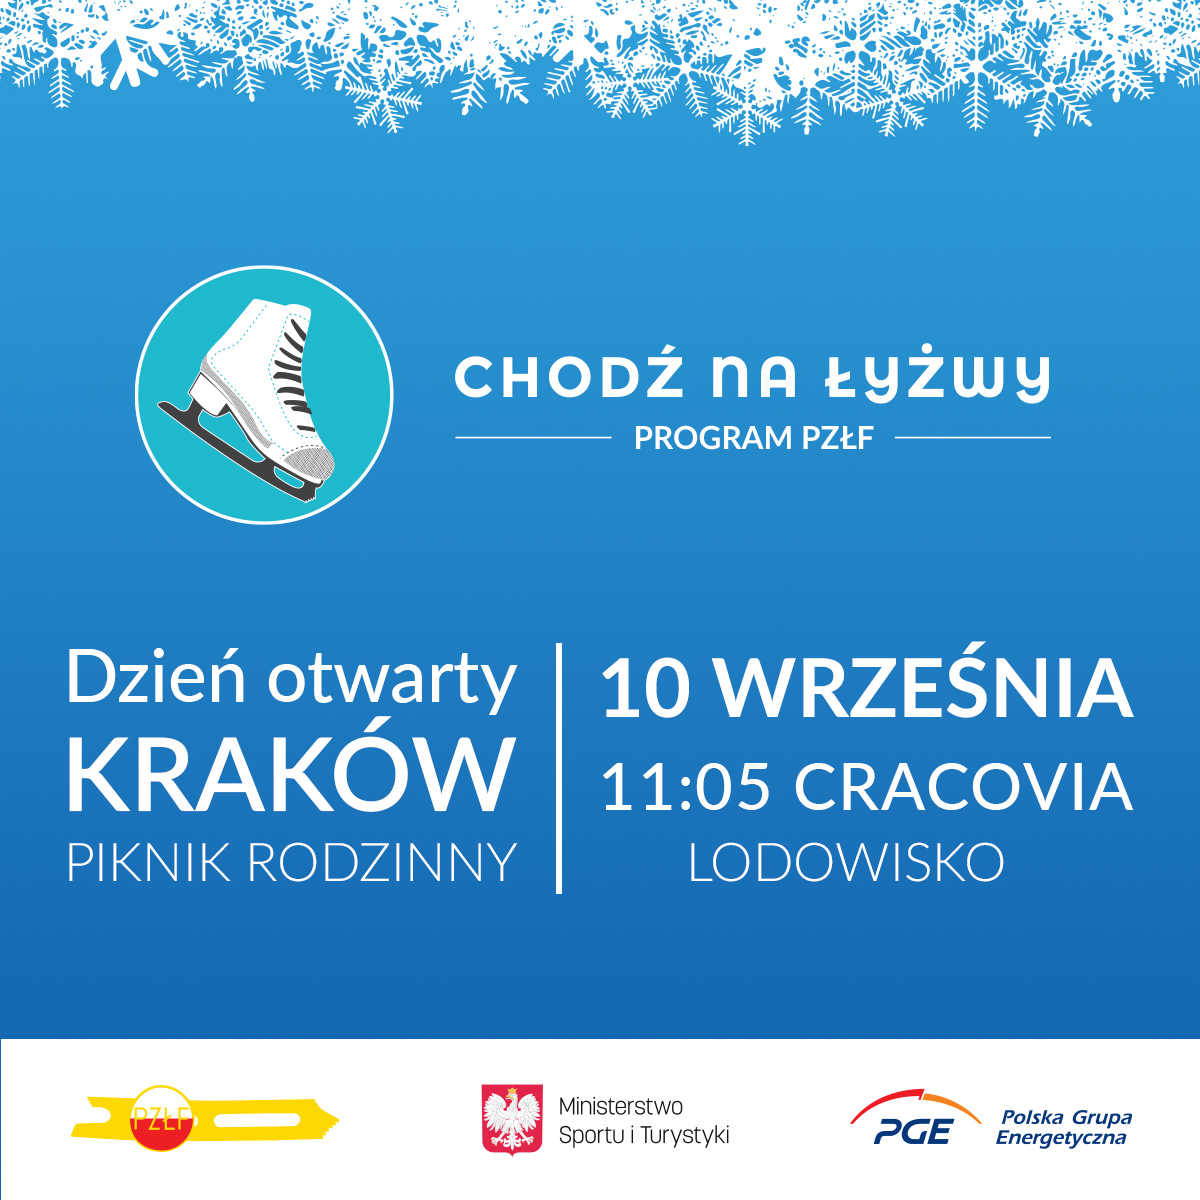 Zaczynamy sezon! Pierwszy dzień otwarty i piknik rodzinny programu “Chodź na Łyżwy” w Krakowie już 10 września!